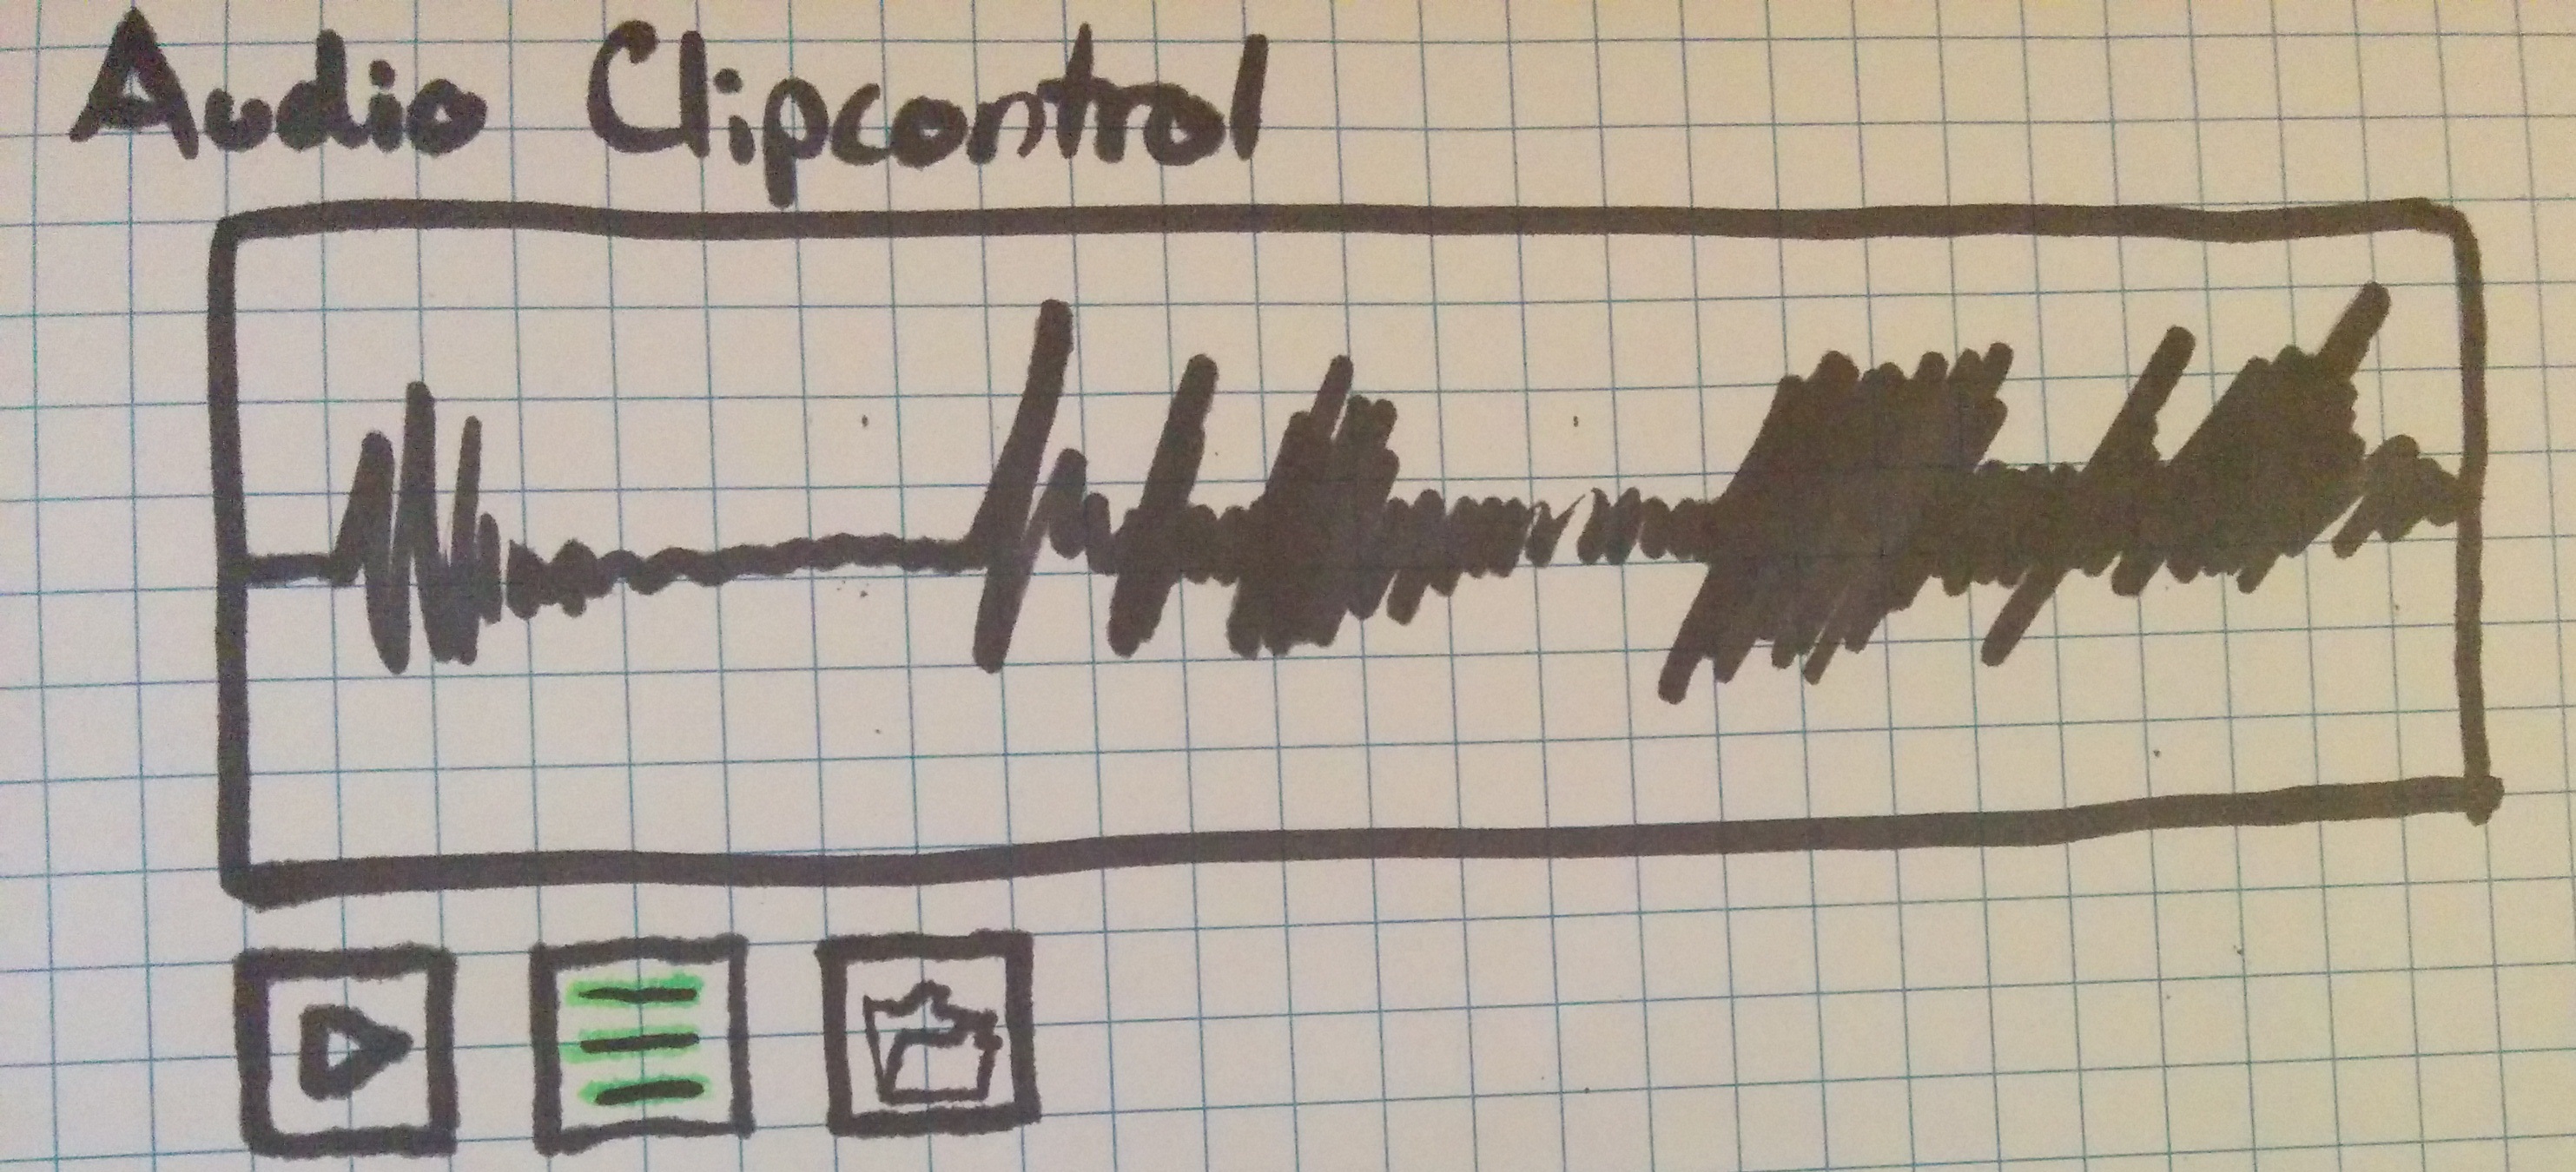 Audio Clip Control Sketch